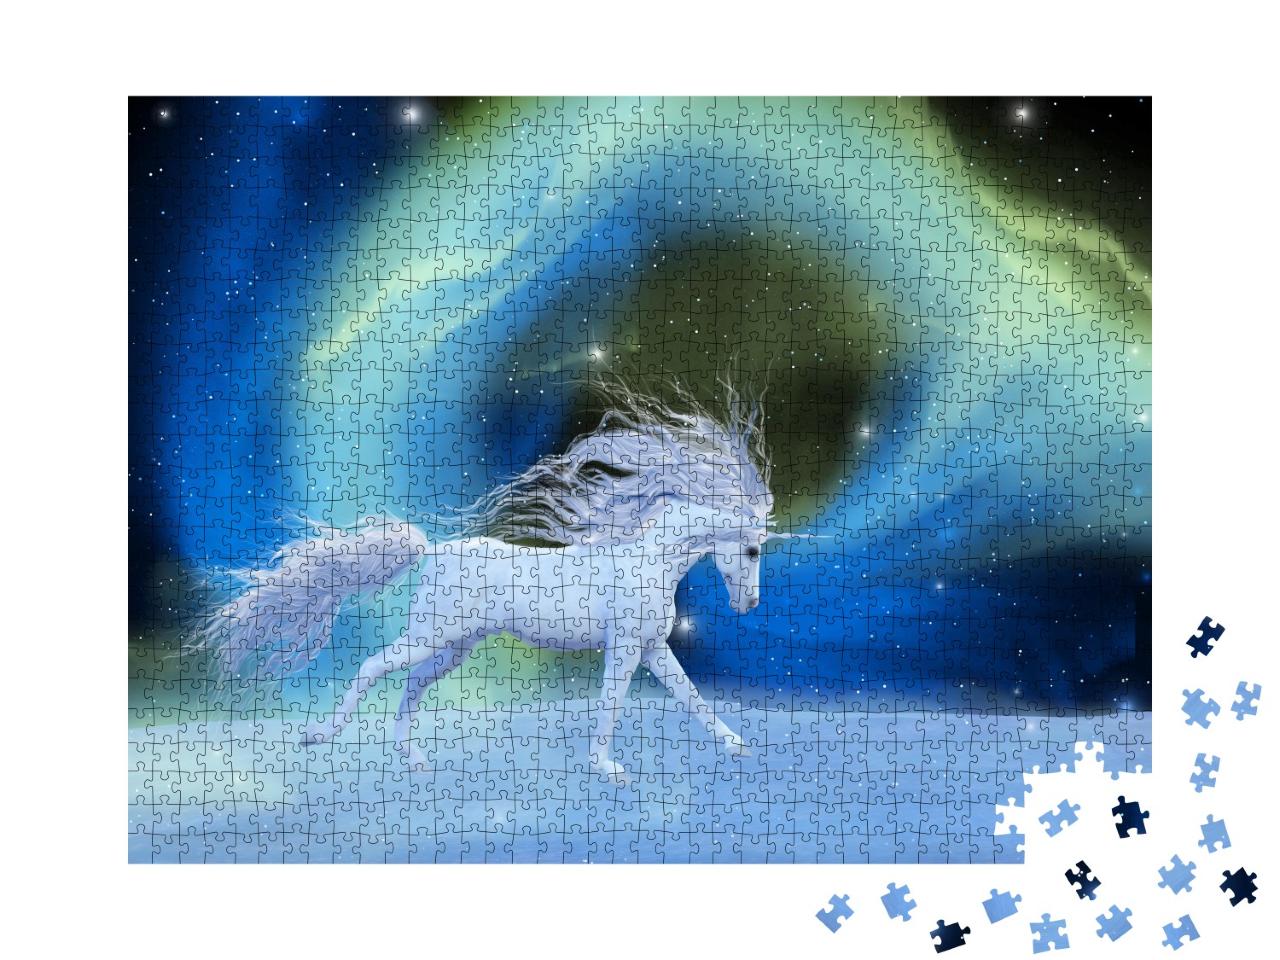 Puzzle 1000 Teile „Digitale Kunst: Mystisches Einhorn in einem Universum aus Aurora-Nebel“